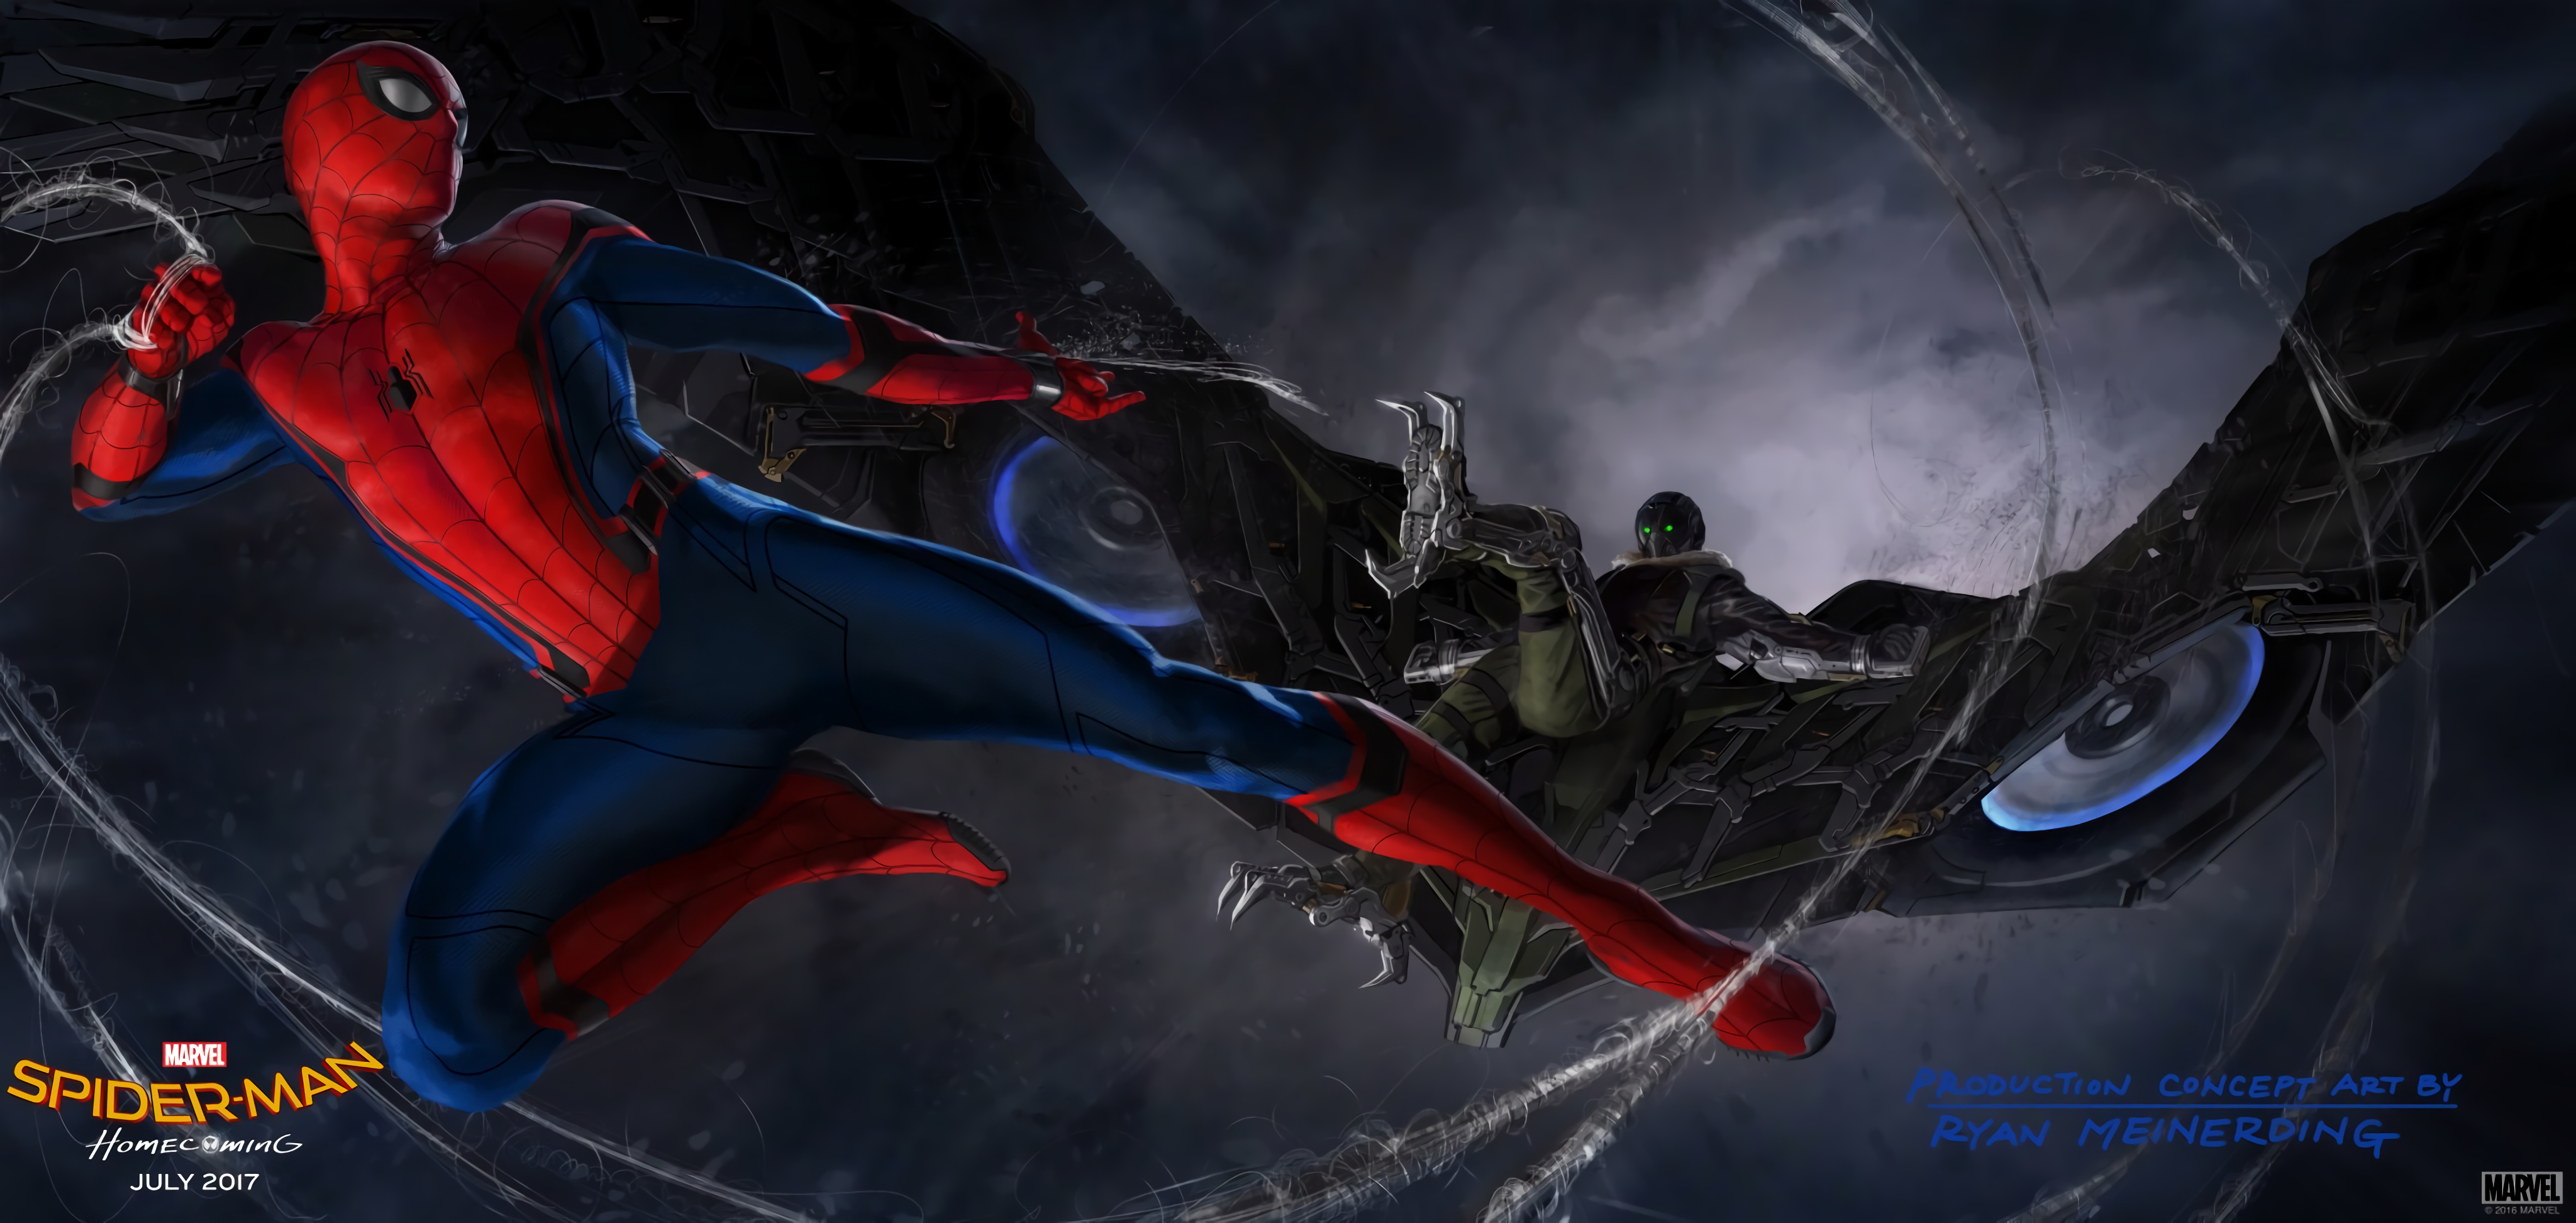 Spider-Man Homecoming: Concept Art by Ryan Meinerding